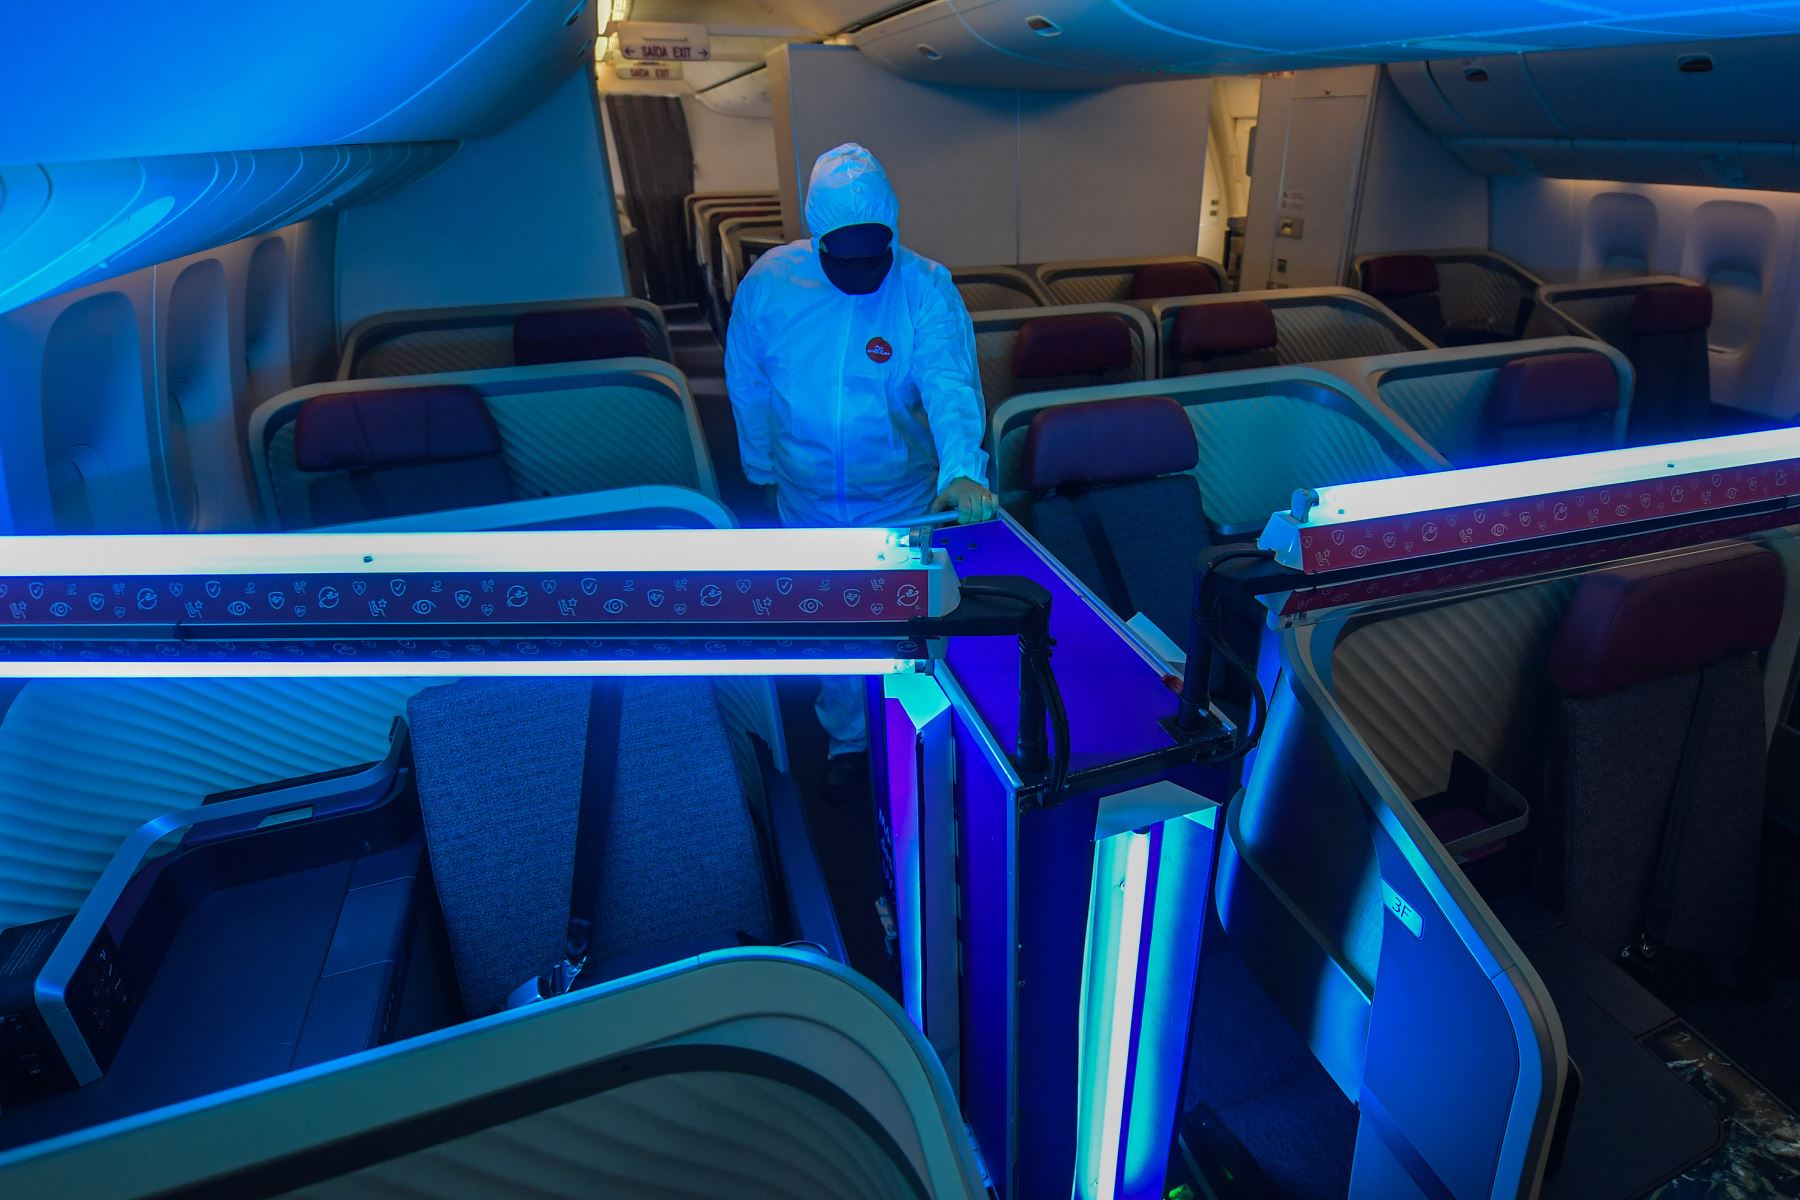 Un empleado de una aerolínea monitorea el funcionamiento de un robot autónomo que utiliza luz ultravioleta tipo C (UV-C) para limpiar el interior de la aeronave, en medio de la pandemia del nuevo coronavirus. Foto: AFP